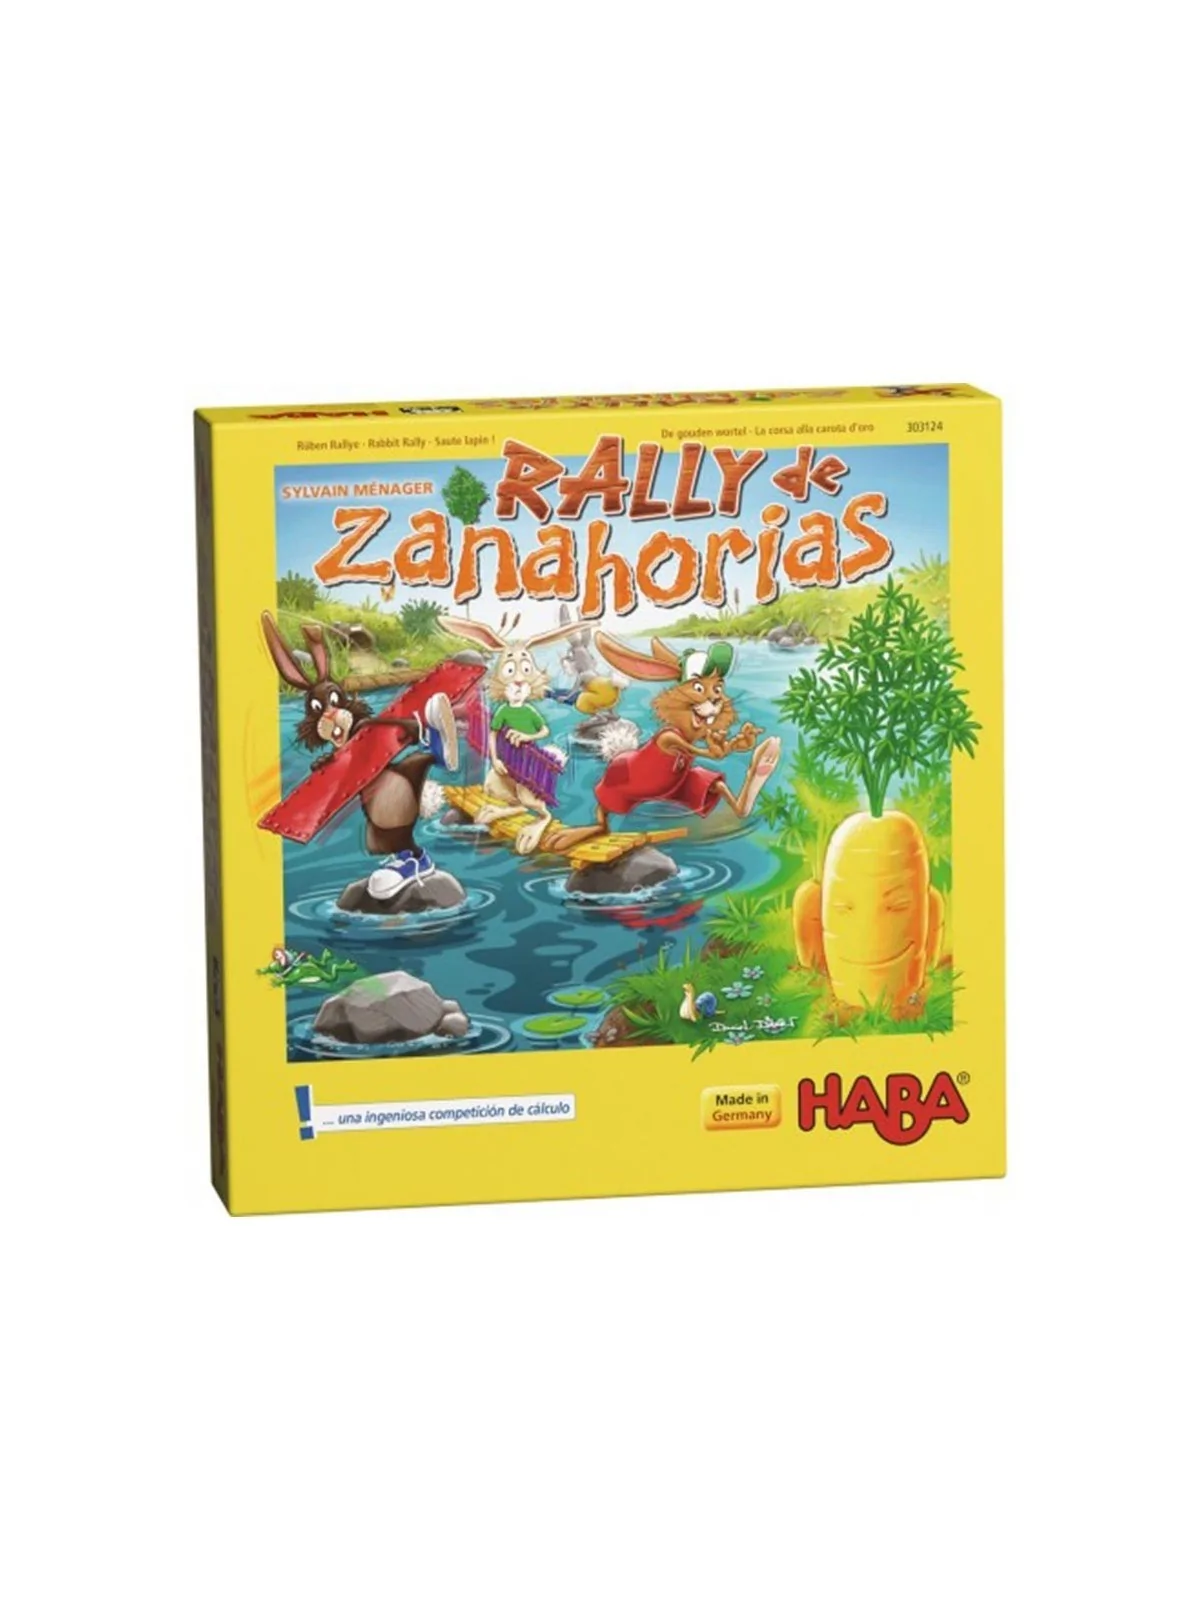 Comprar Rally de Zanahorias barato al mejor precio 16,24 € de Haba